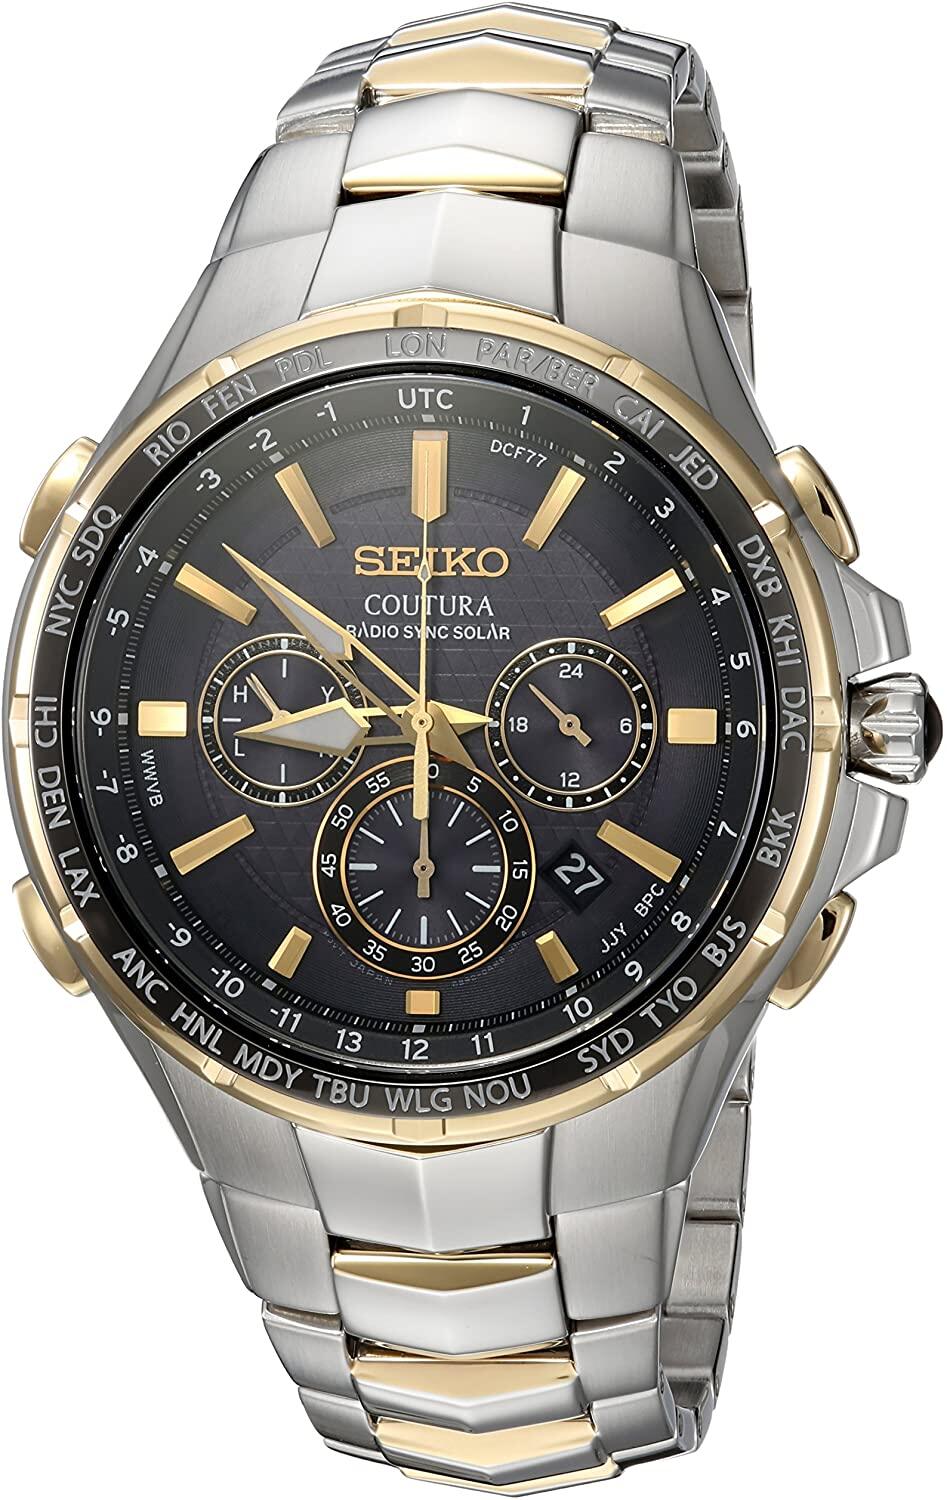 Đồng hồ Seiko cổ sẵn sàng (SEIKO SSG010 Watch) Seiko SSG010 COUTURA Analog  Display Japanese Quartz Two Tone Watch [Hộp & Sách hướng dẫn của Nhà sản  xuất + Người bán bảo hành một năm] 